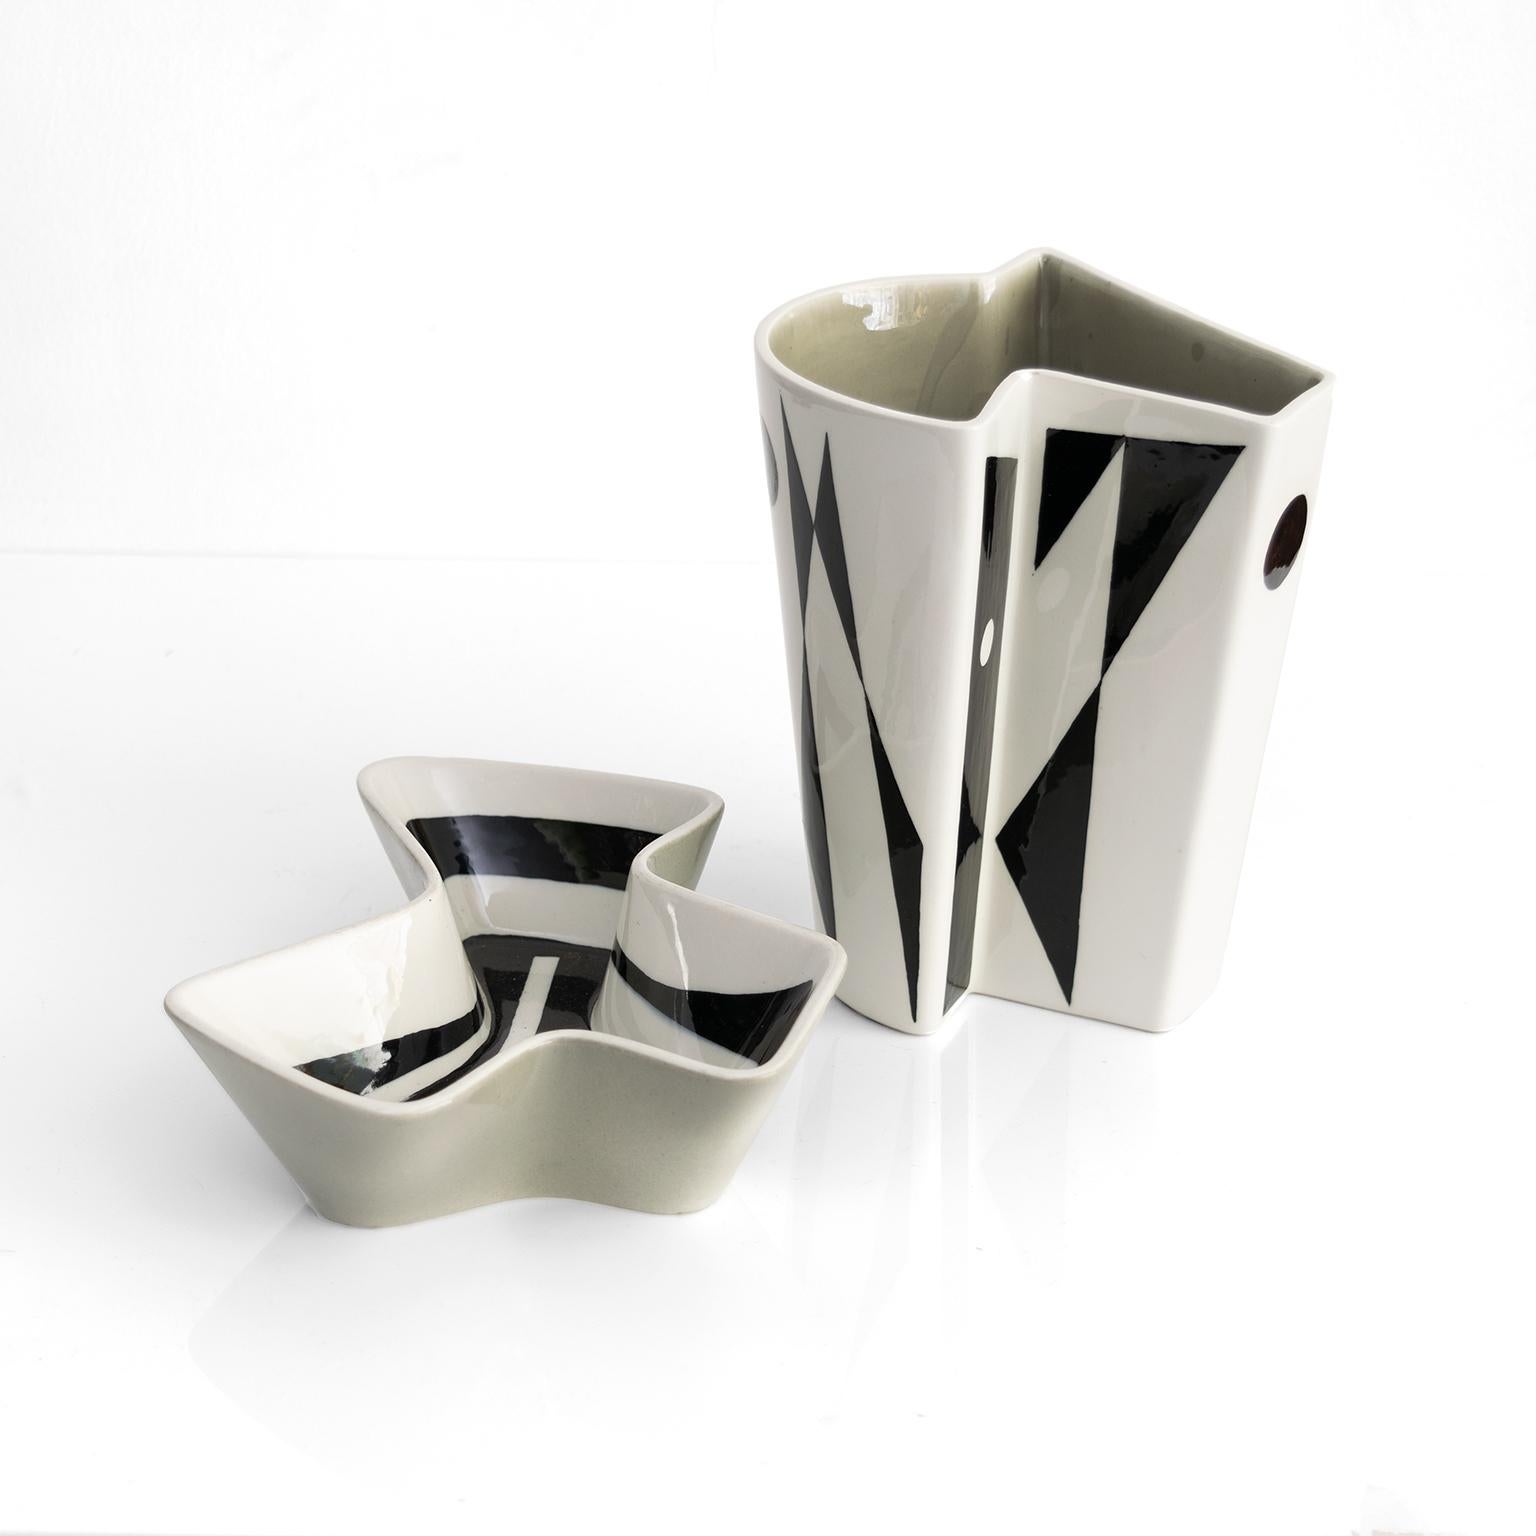 Vase et bol en céramique Carl- Harry Stalhane aux formes angulaires libres. Décoré brillamment de motifs noirs sur des glaçures blanches et gris pâle. Fabriqué à Rorstrand, Suède 1950

Vase : Hauteur : 8